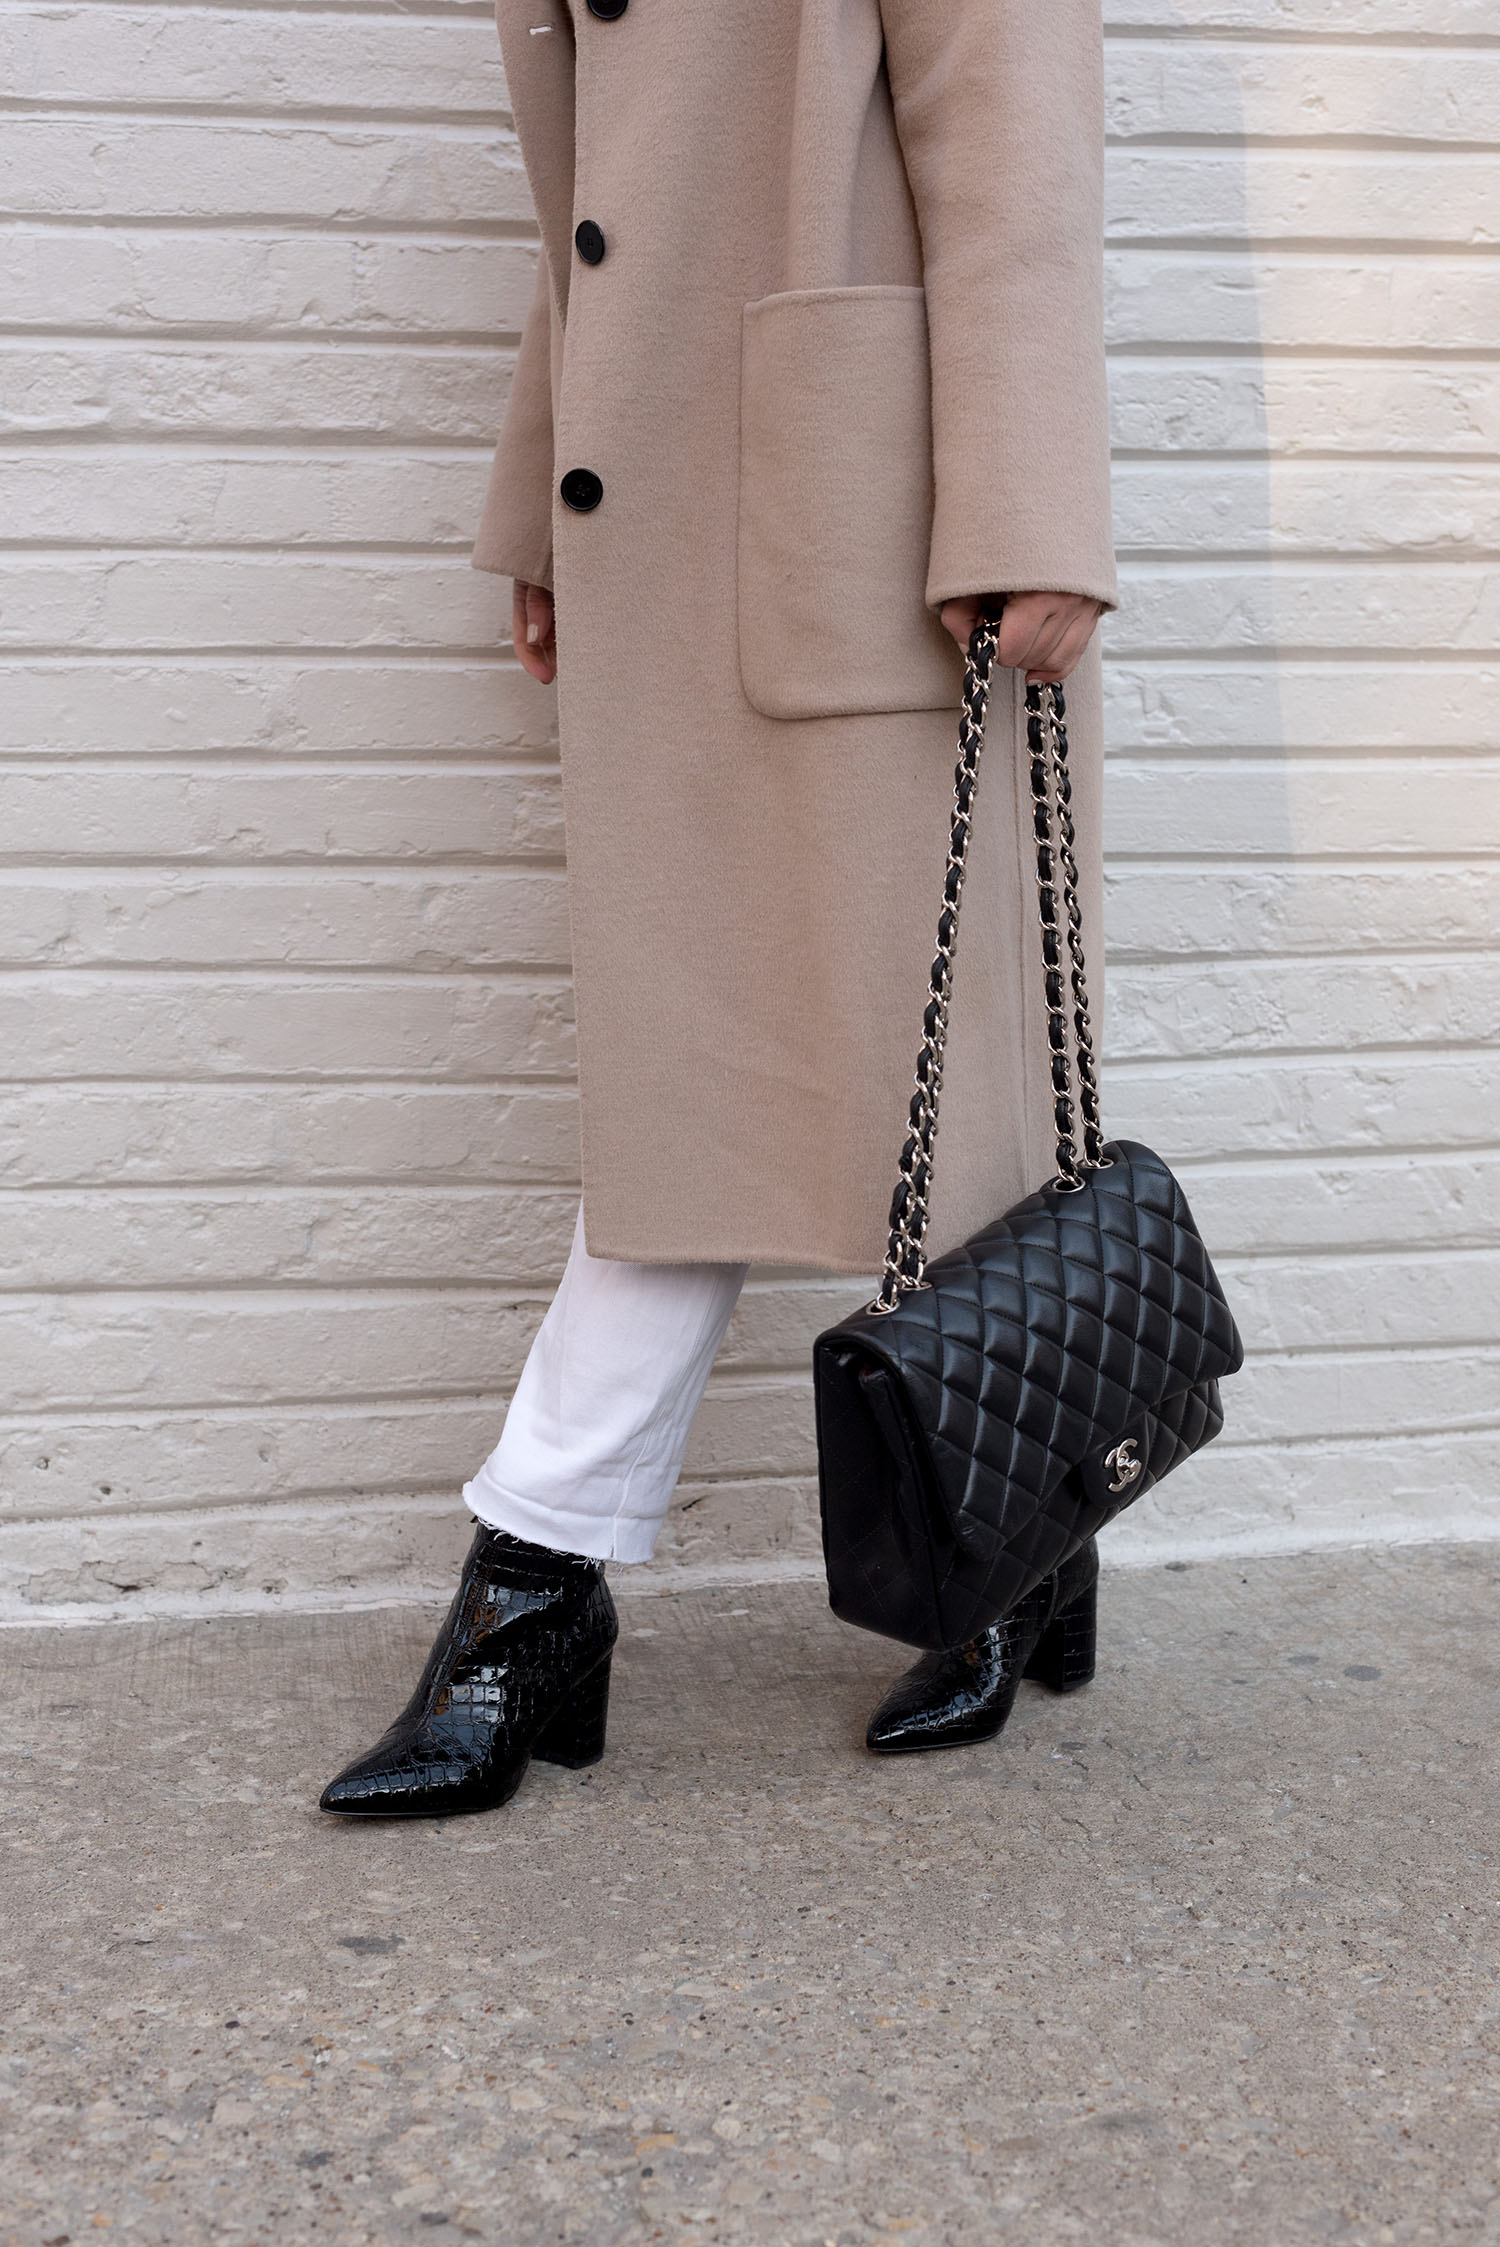 Coco & Vera - Chanel handbag, Aldo boots, Zara wool coat